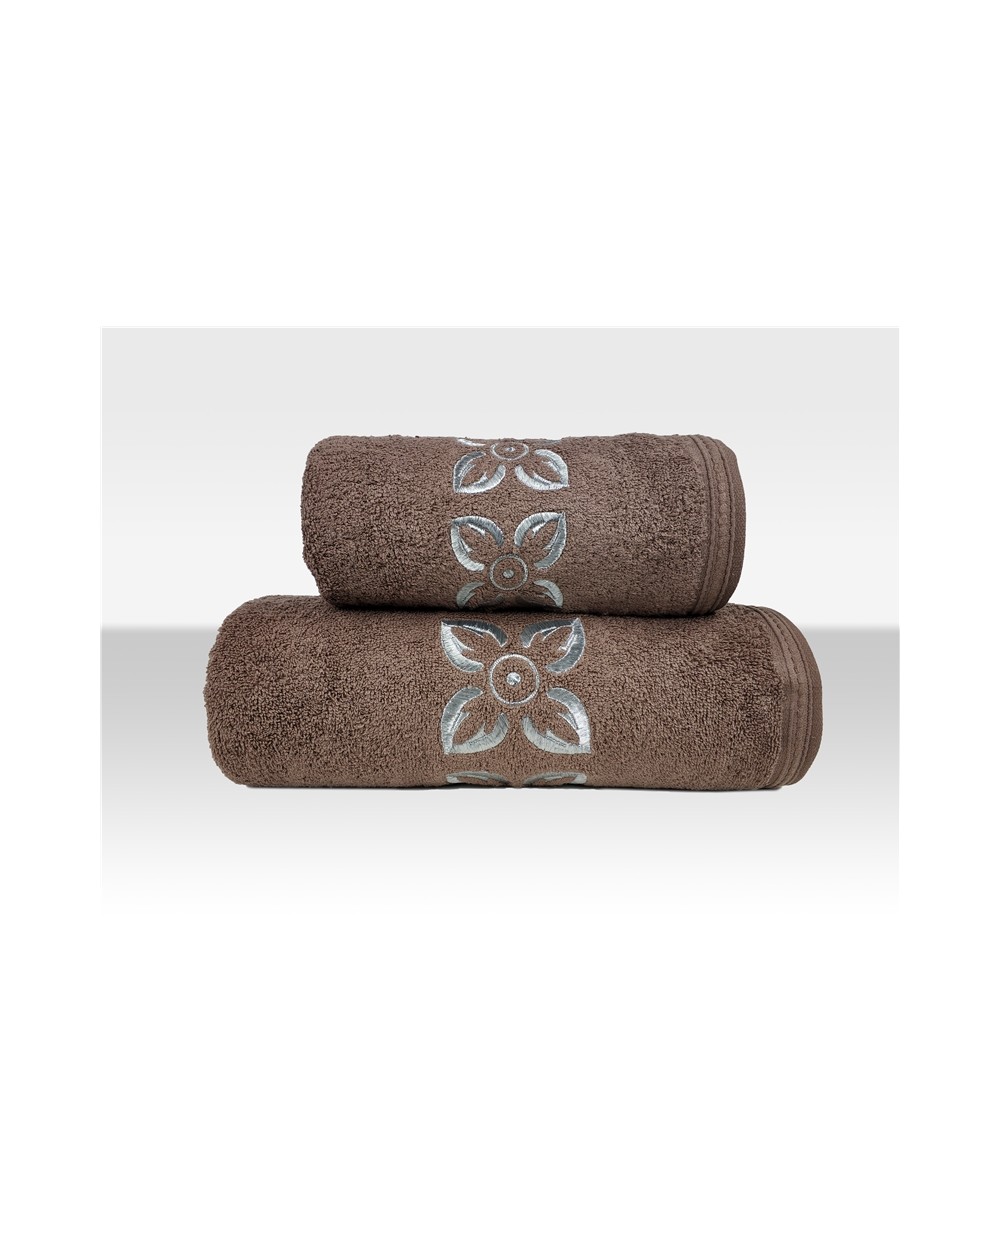 Ręcznik Victoria bawełna 70x130 brązowy